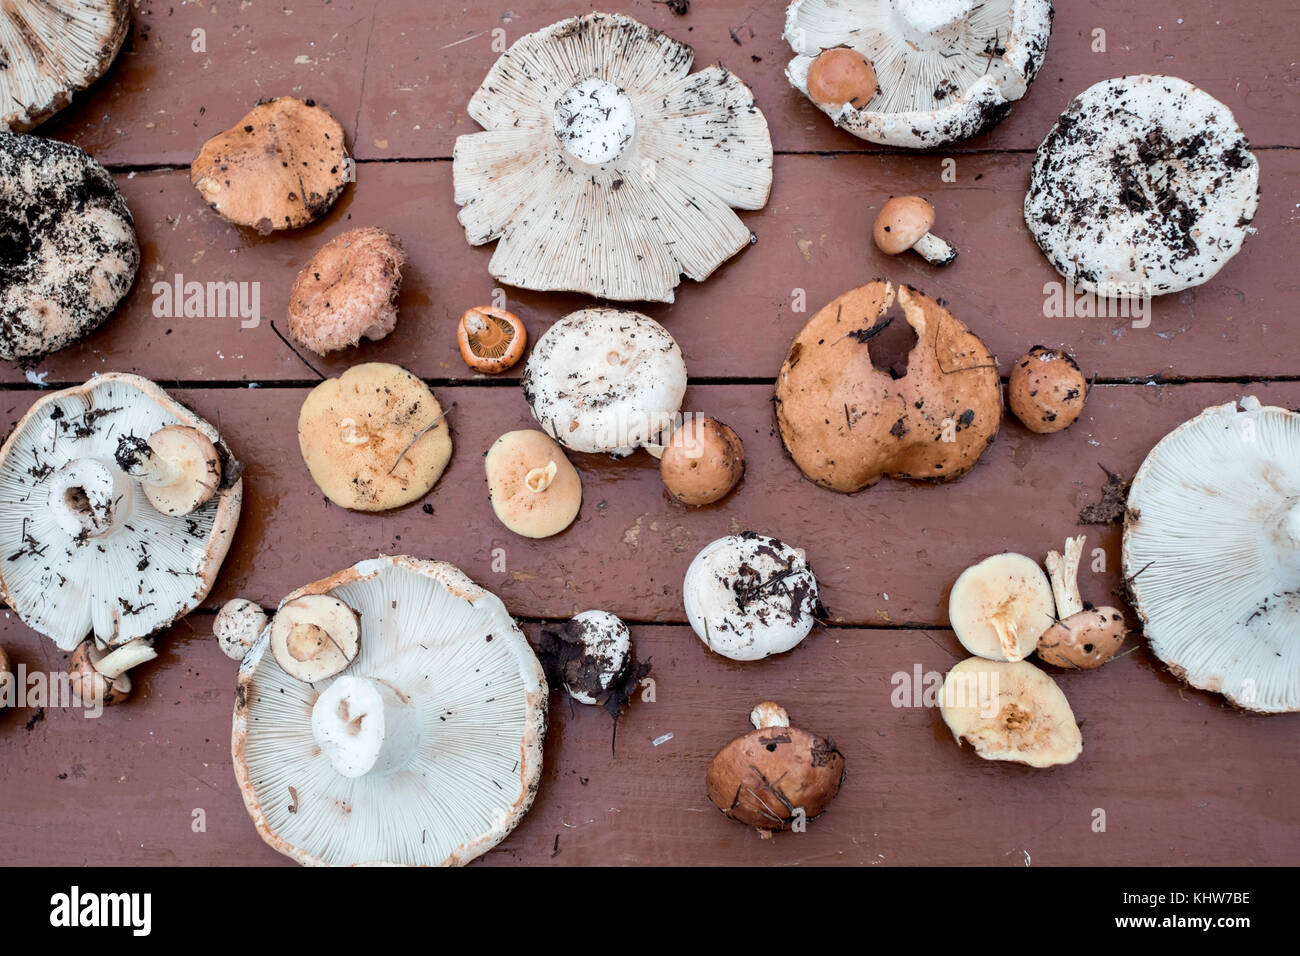 Sélection de champignons fraîchement cueillis sur la surface en bois, overhead view Banque D'Images